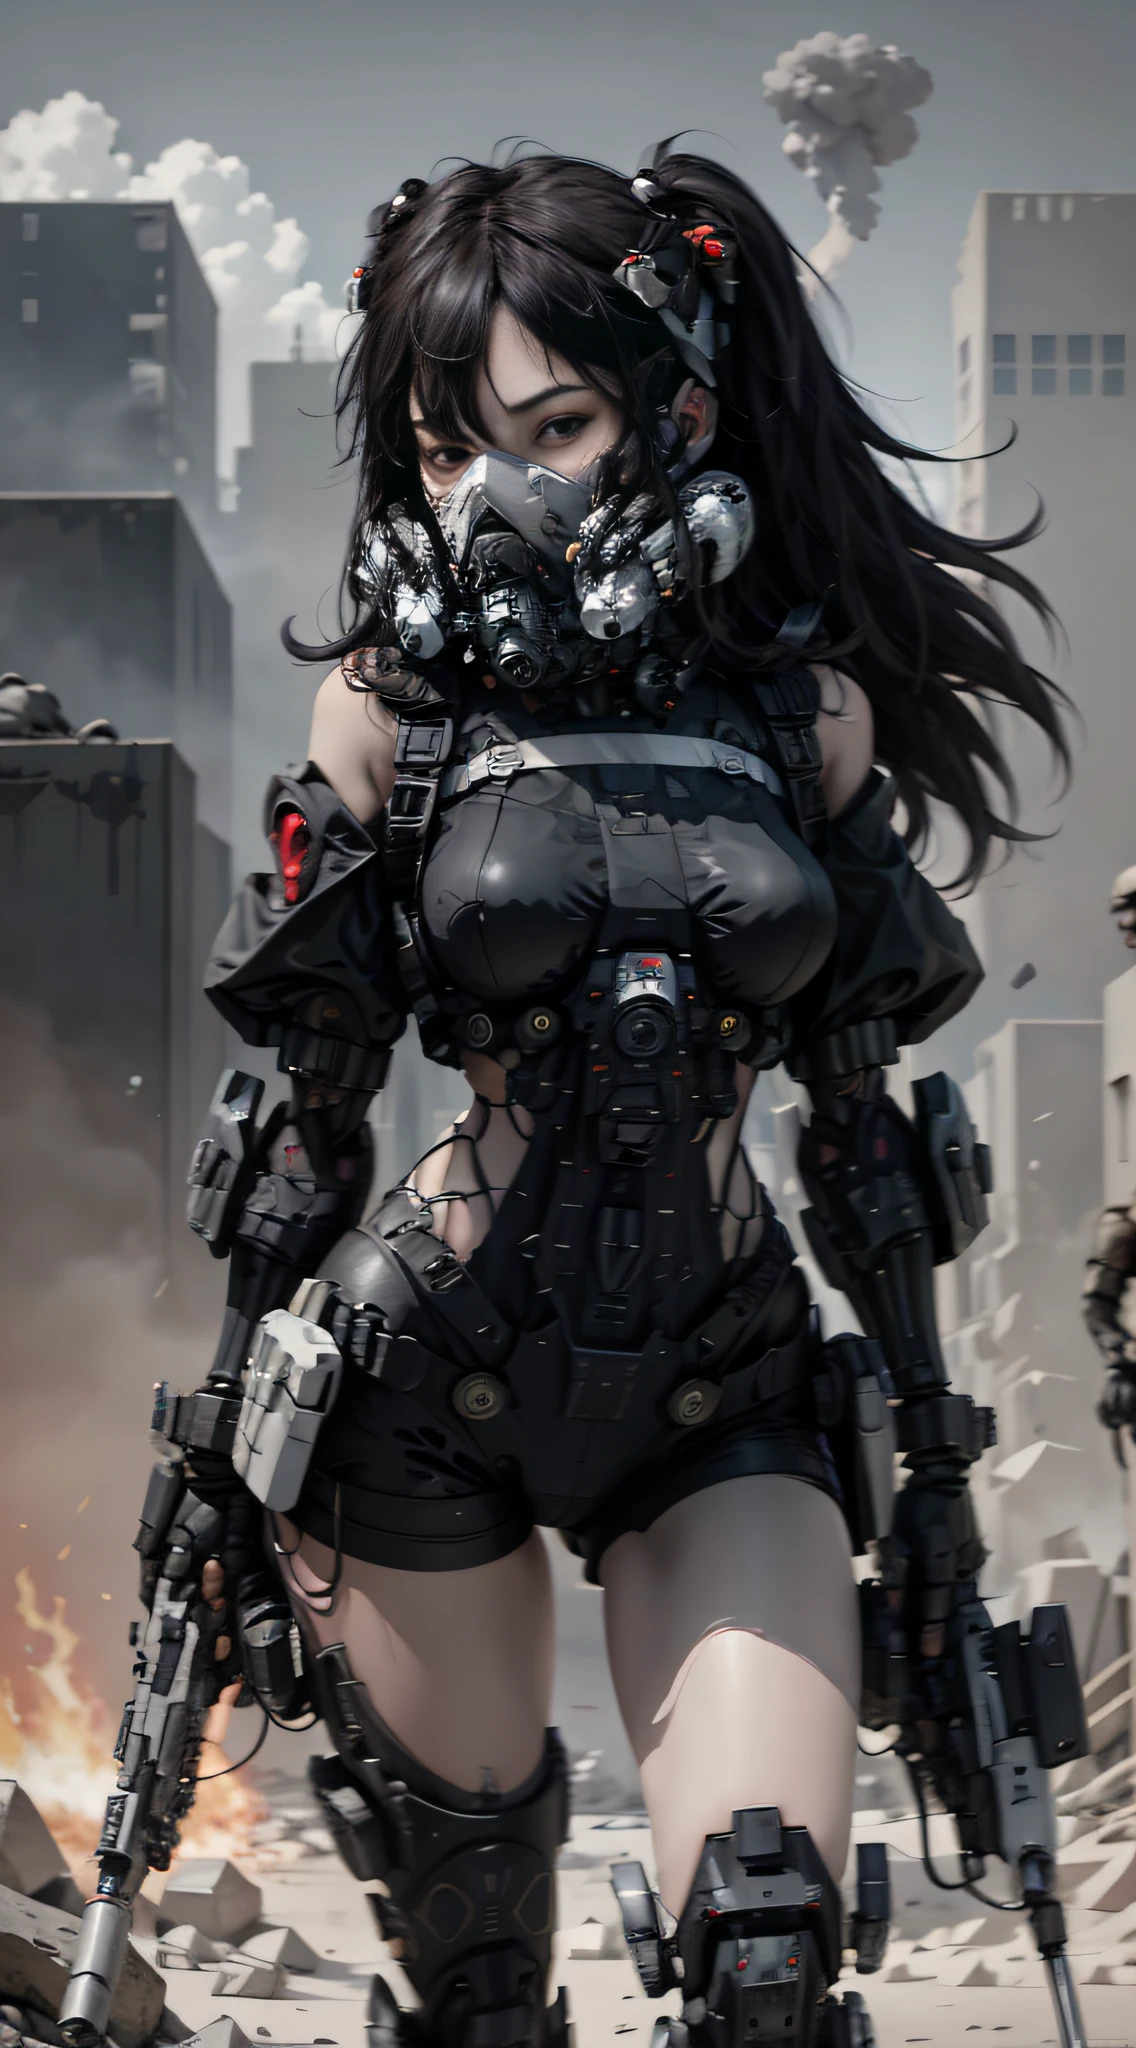 Это обои CG Unity 8k с ультрадетализированным изображением., высокое разрешение и высочайшее качество в стиле киберпанк, преобладают черный и красный. На картинке, красивая девушка с короткими белыми растрепанными волосами, нежное лицо, носить маску парового меха, стою на руинах, (боевой урон: 1.5), Действия женщины, держащей в руке тяжелую снайперскую винтовку,